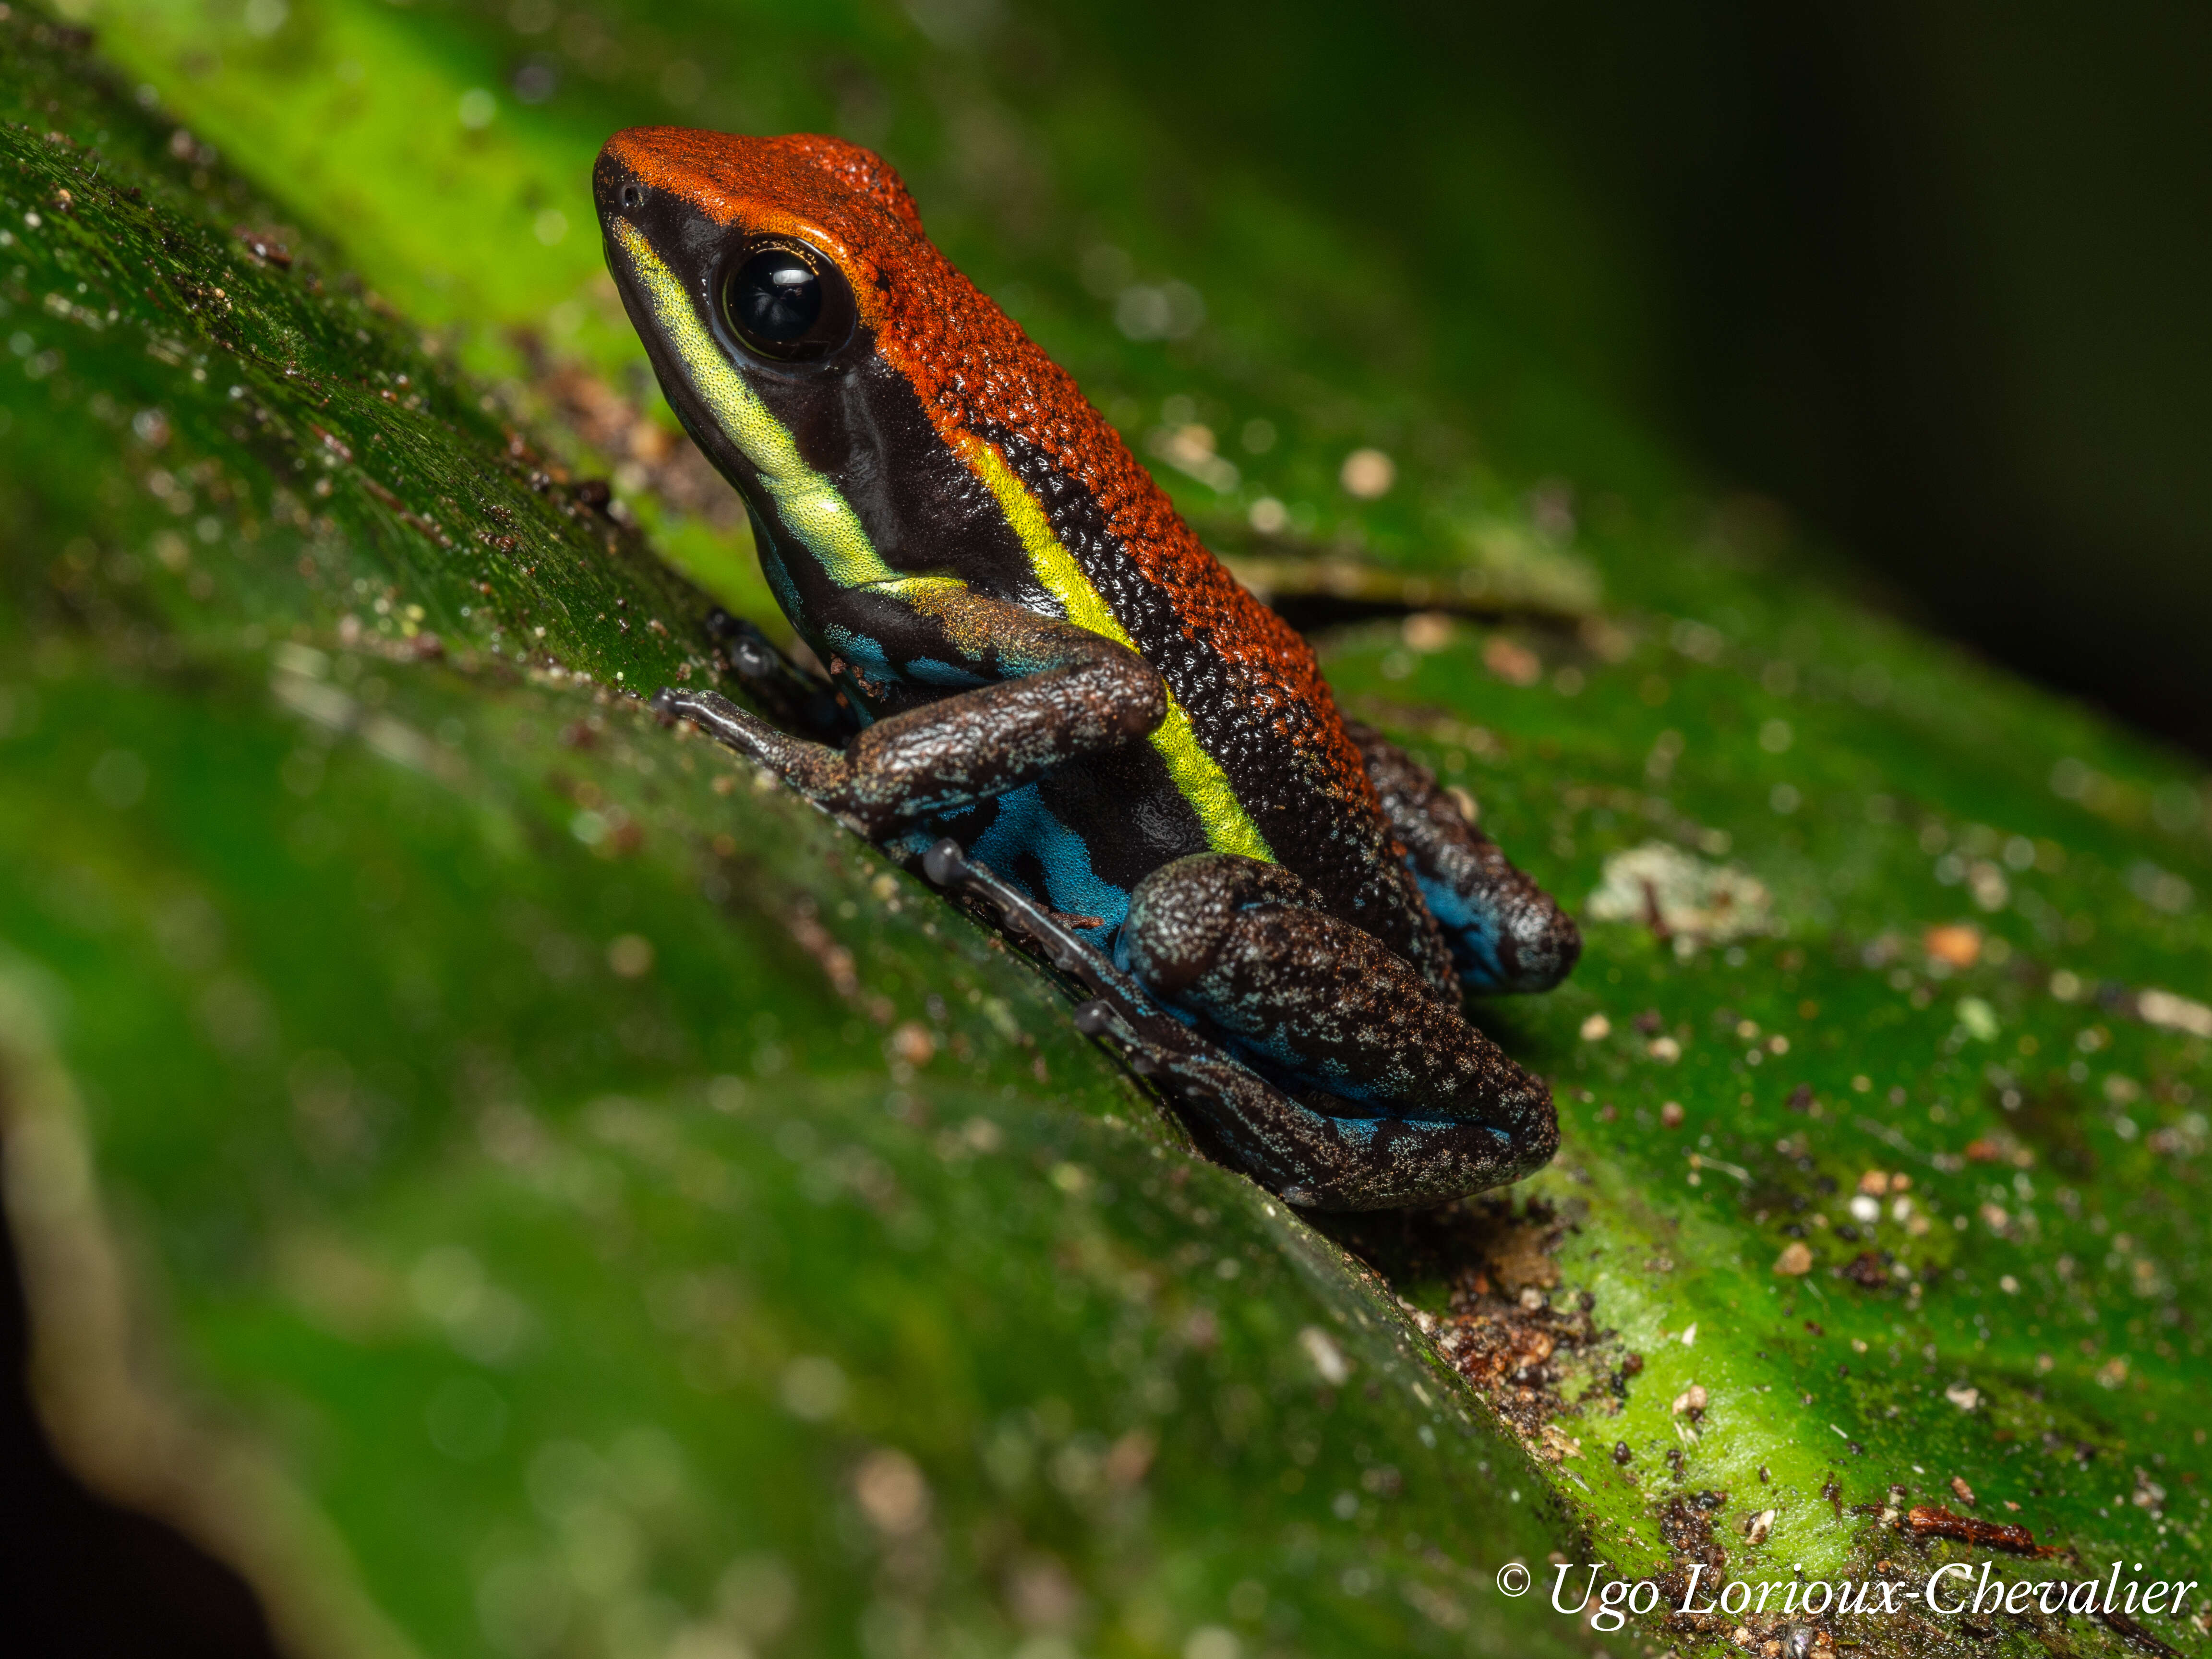 Image of Cainarachi Poison Frog